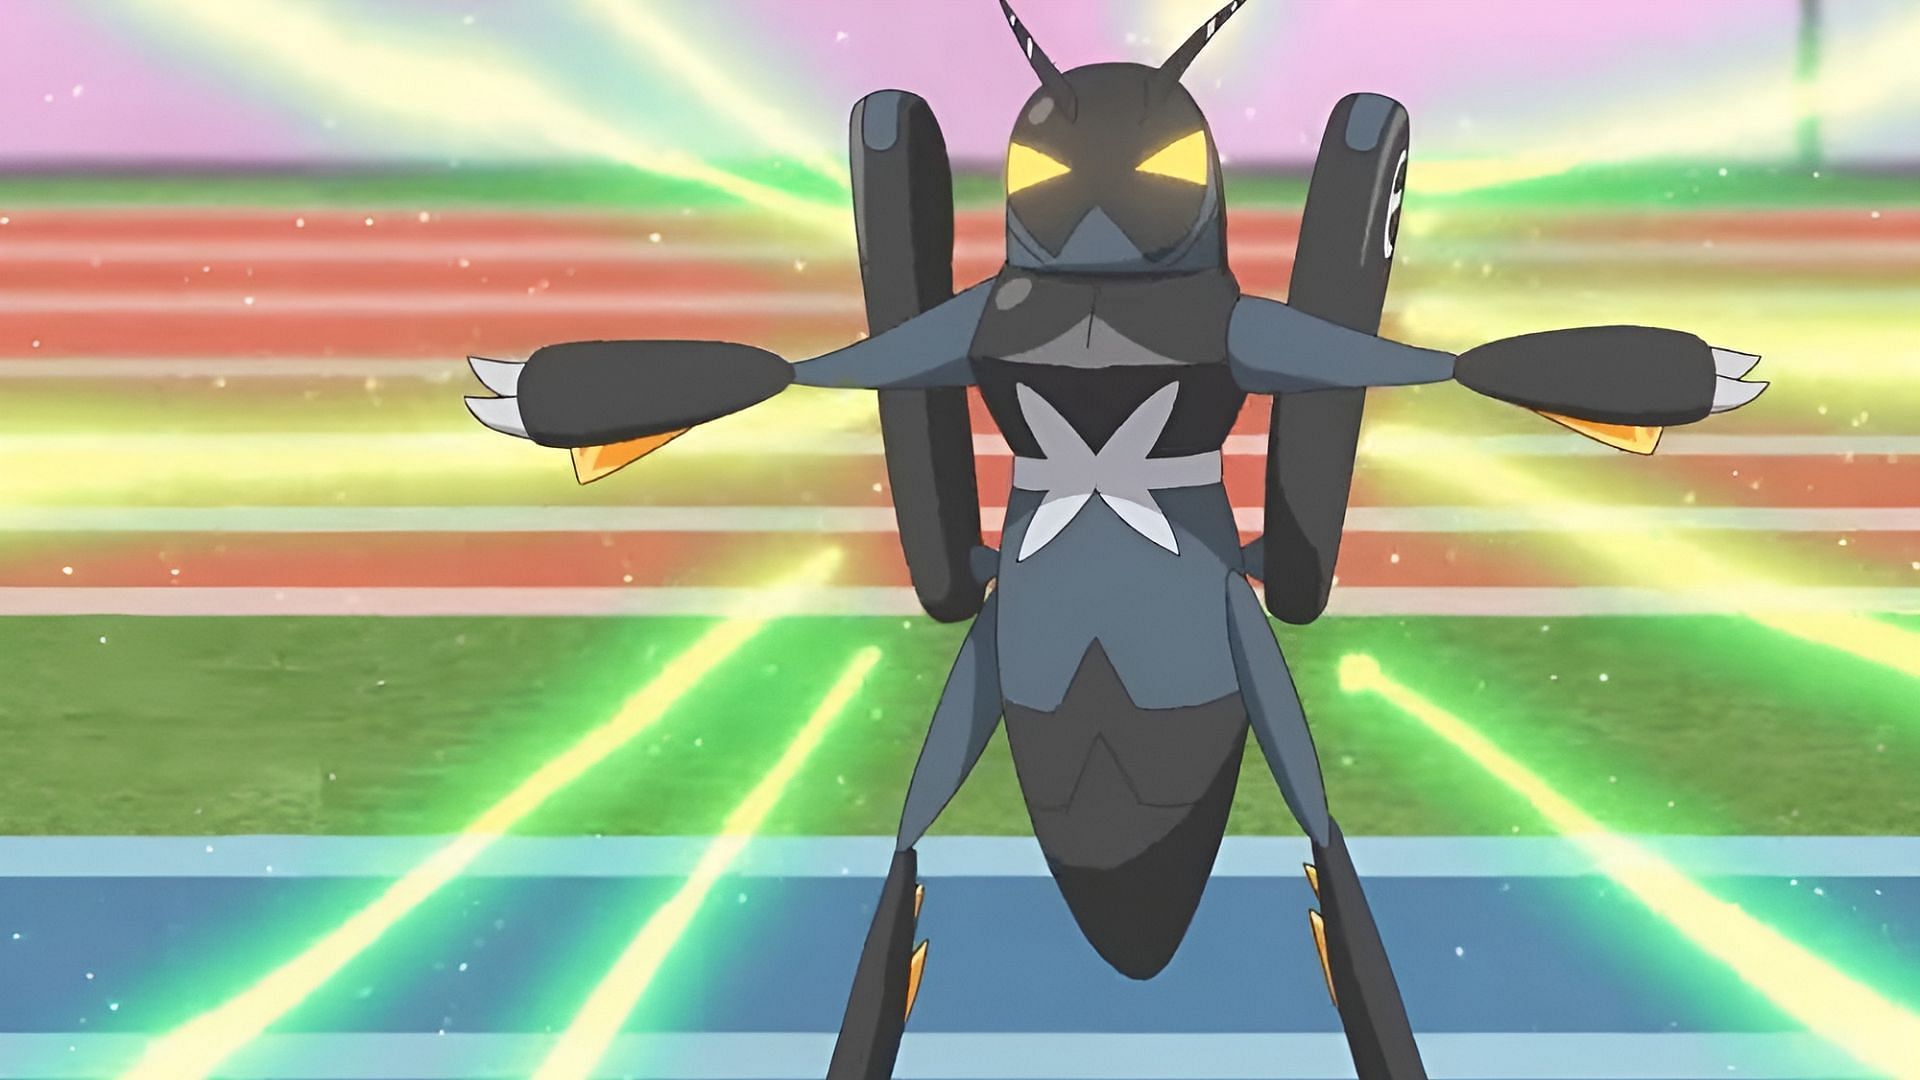 Lokix attacca la squadra di Rika con Struggle Bug nell'episodio 56 di Pokemon Horizons. (Immagine tramite The Pokemon Company)